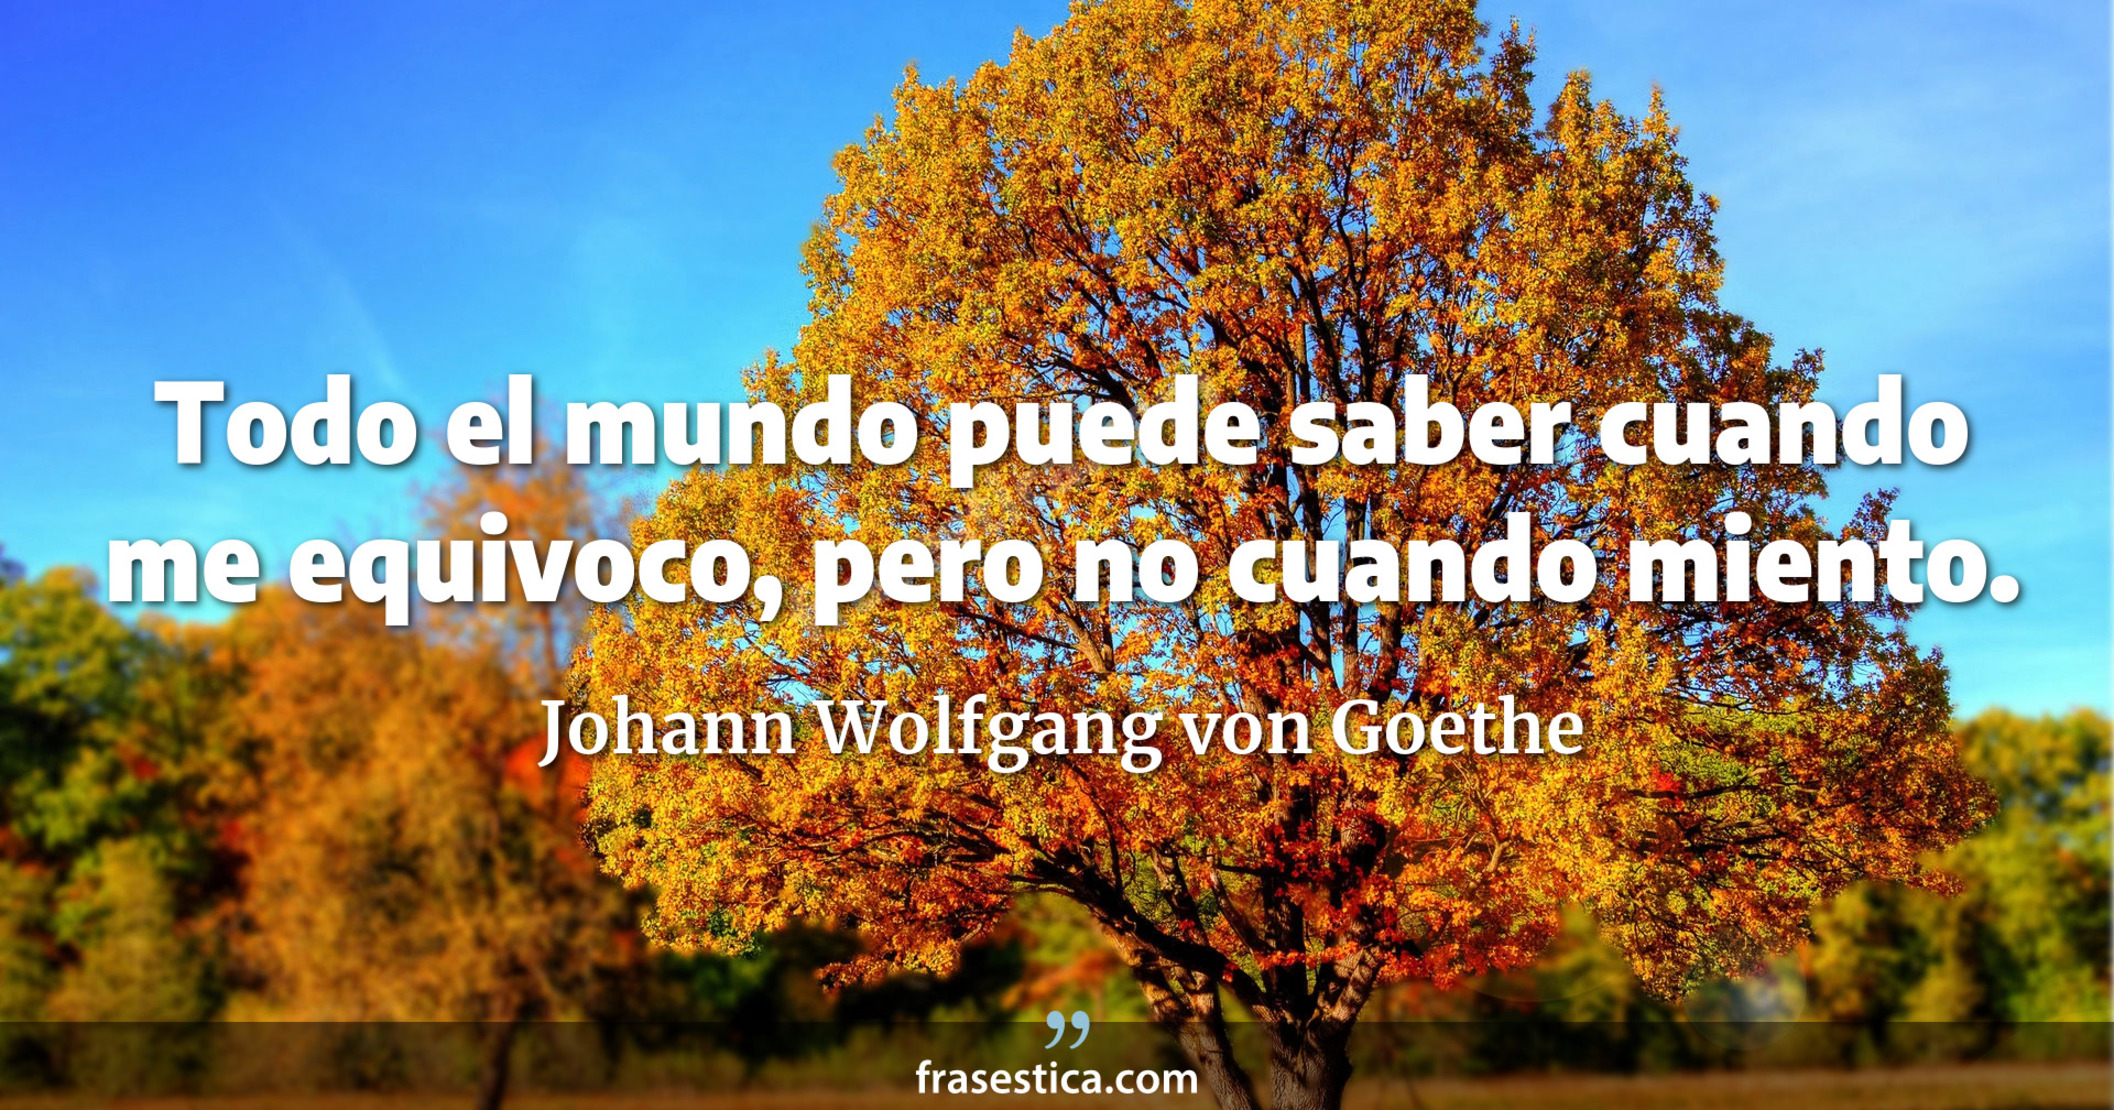 Todo el mundo puede saber cuando me equivoco, pero no cuando miento. - Johann Wolfgang von Goethe